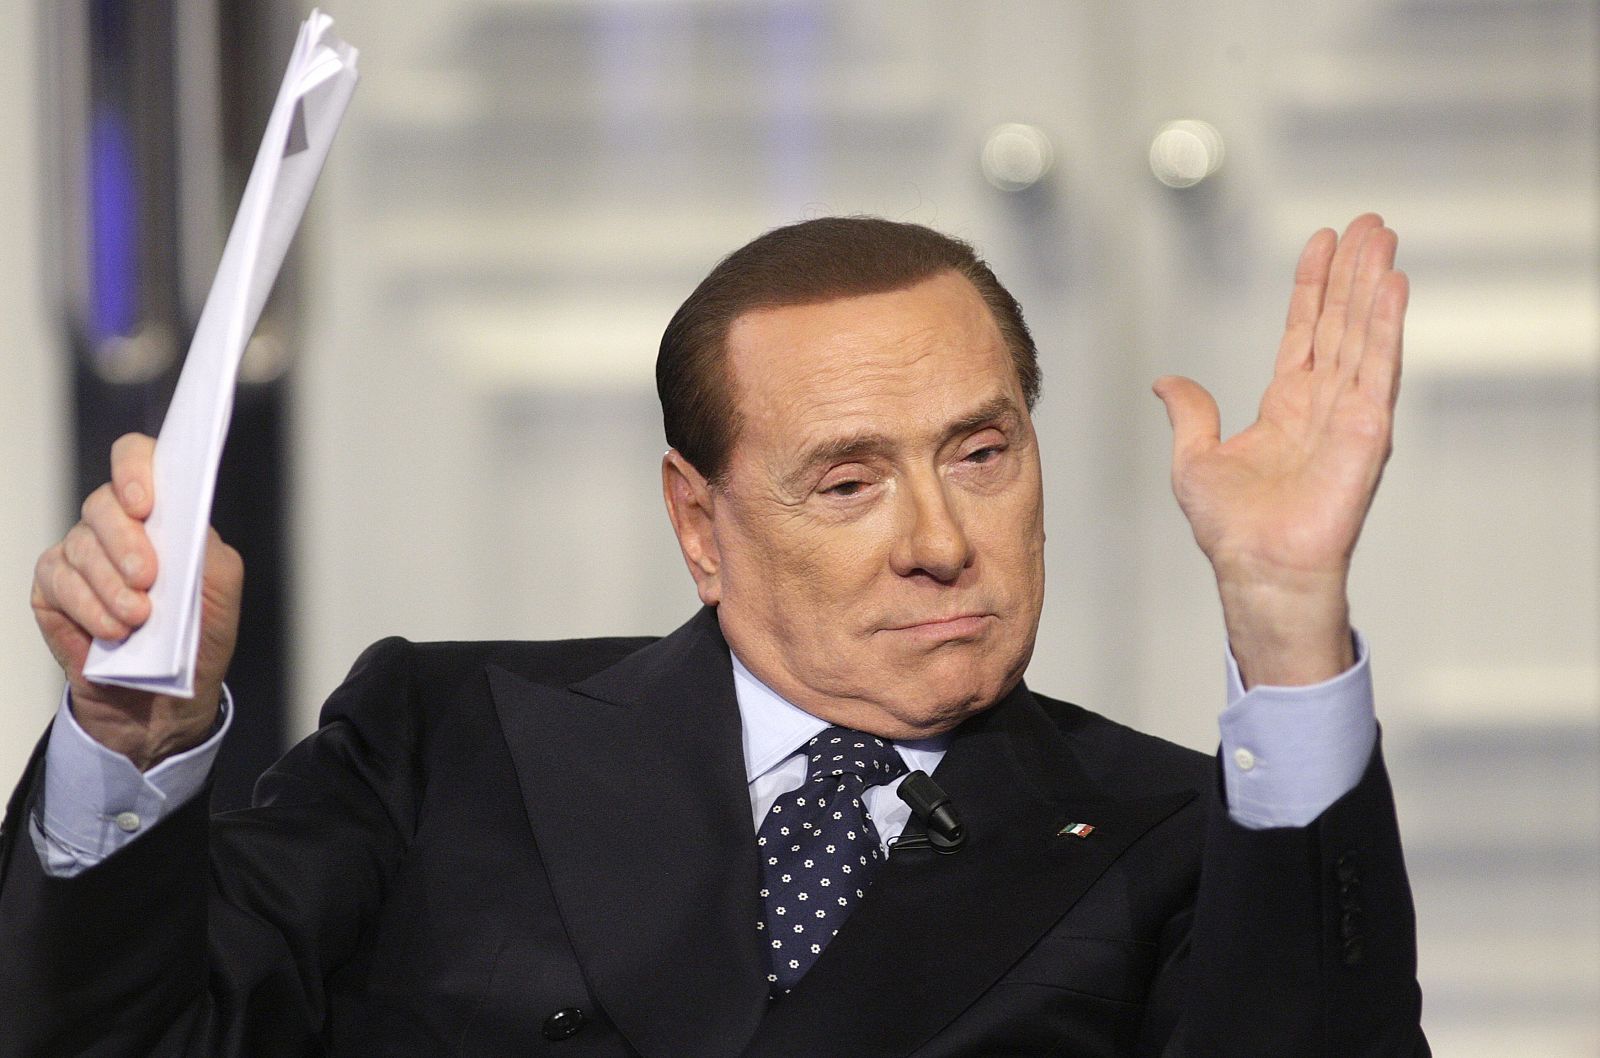 El ex-primer ministro italiano Silvio Berlusconi en un programa de televisión